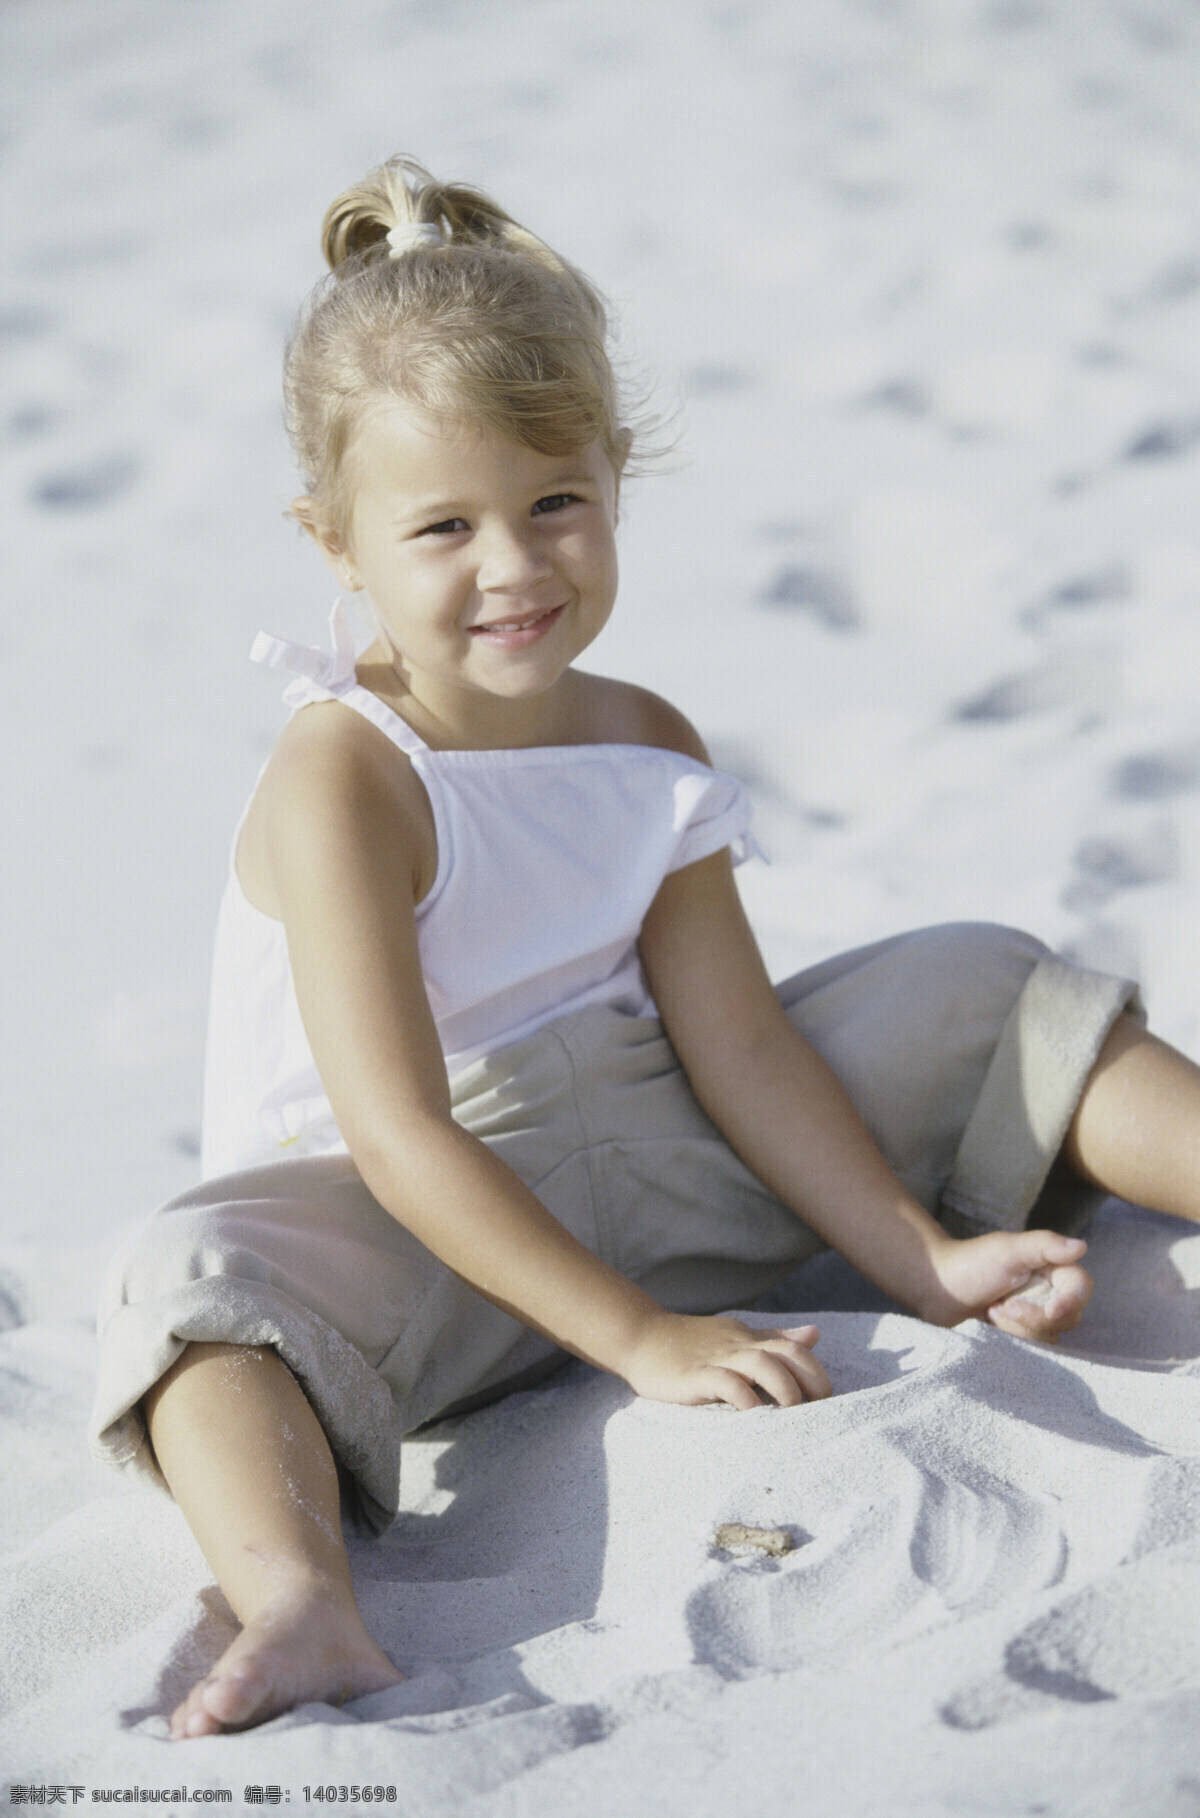 沙滩 上 玩 沙子 小女孩 海边人物 海滩 外国儿童 可爱 玩沙子 生活人物 人物图片